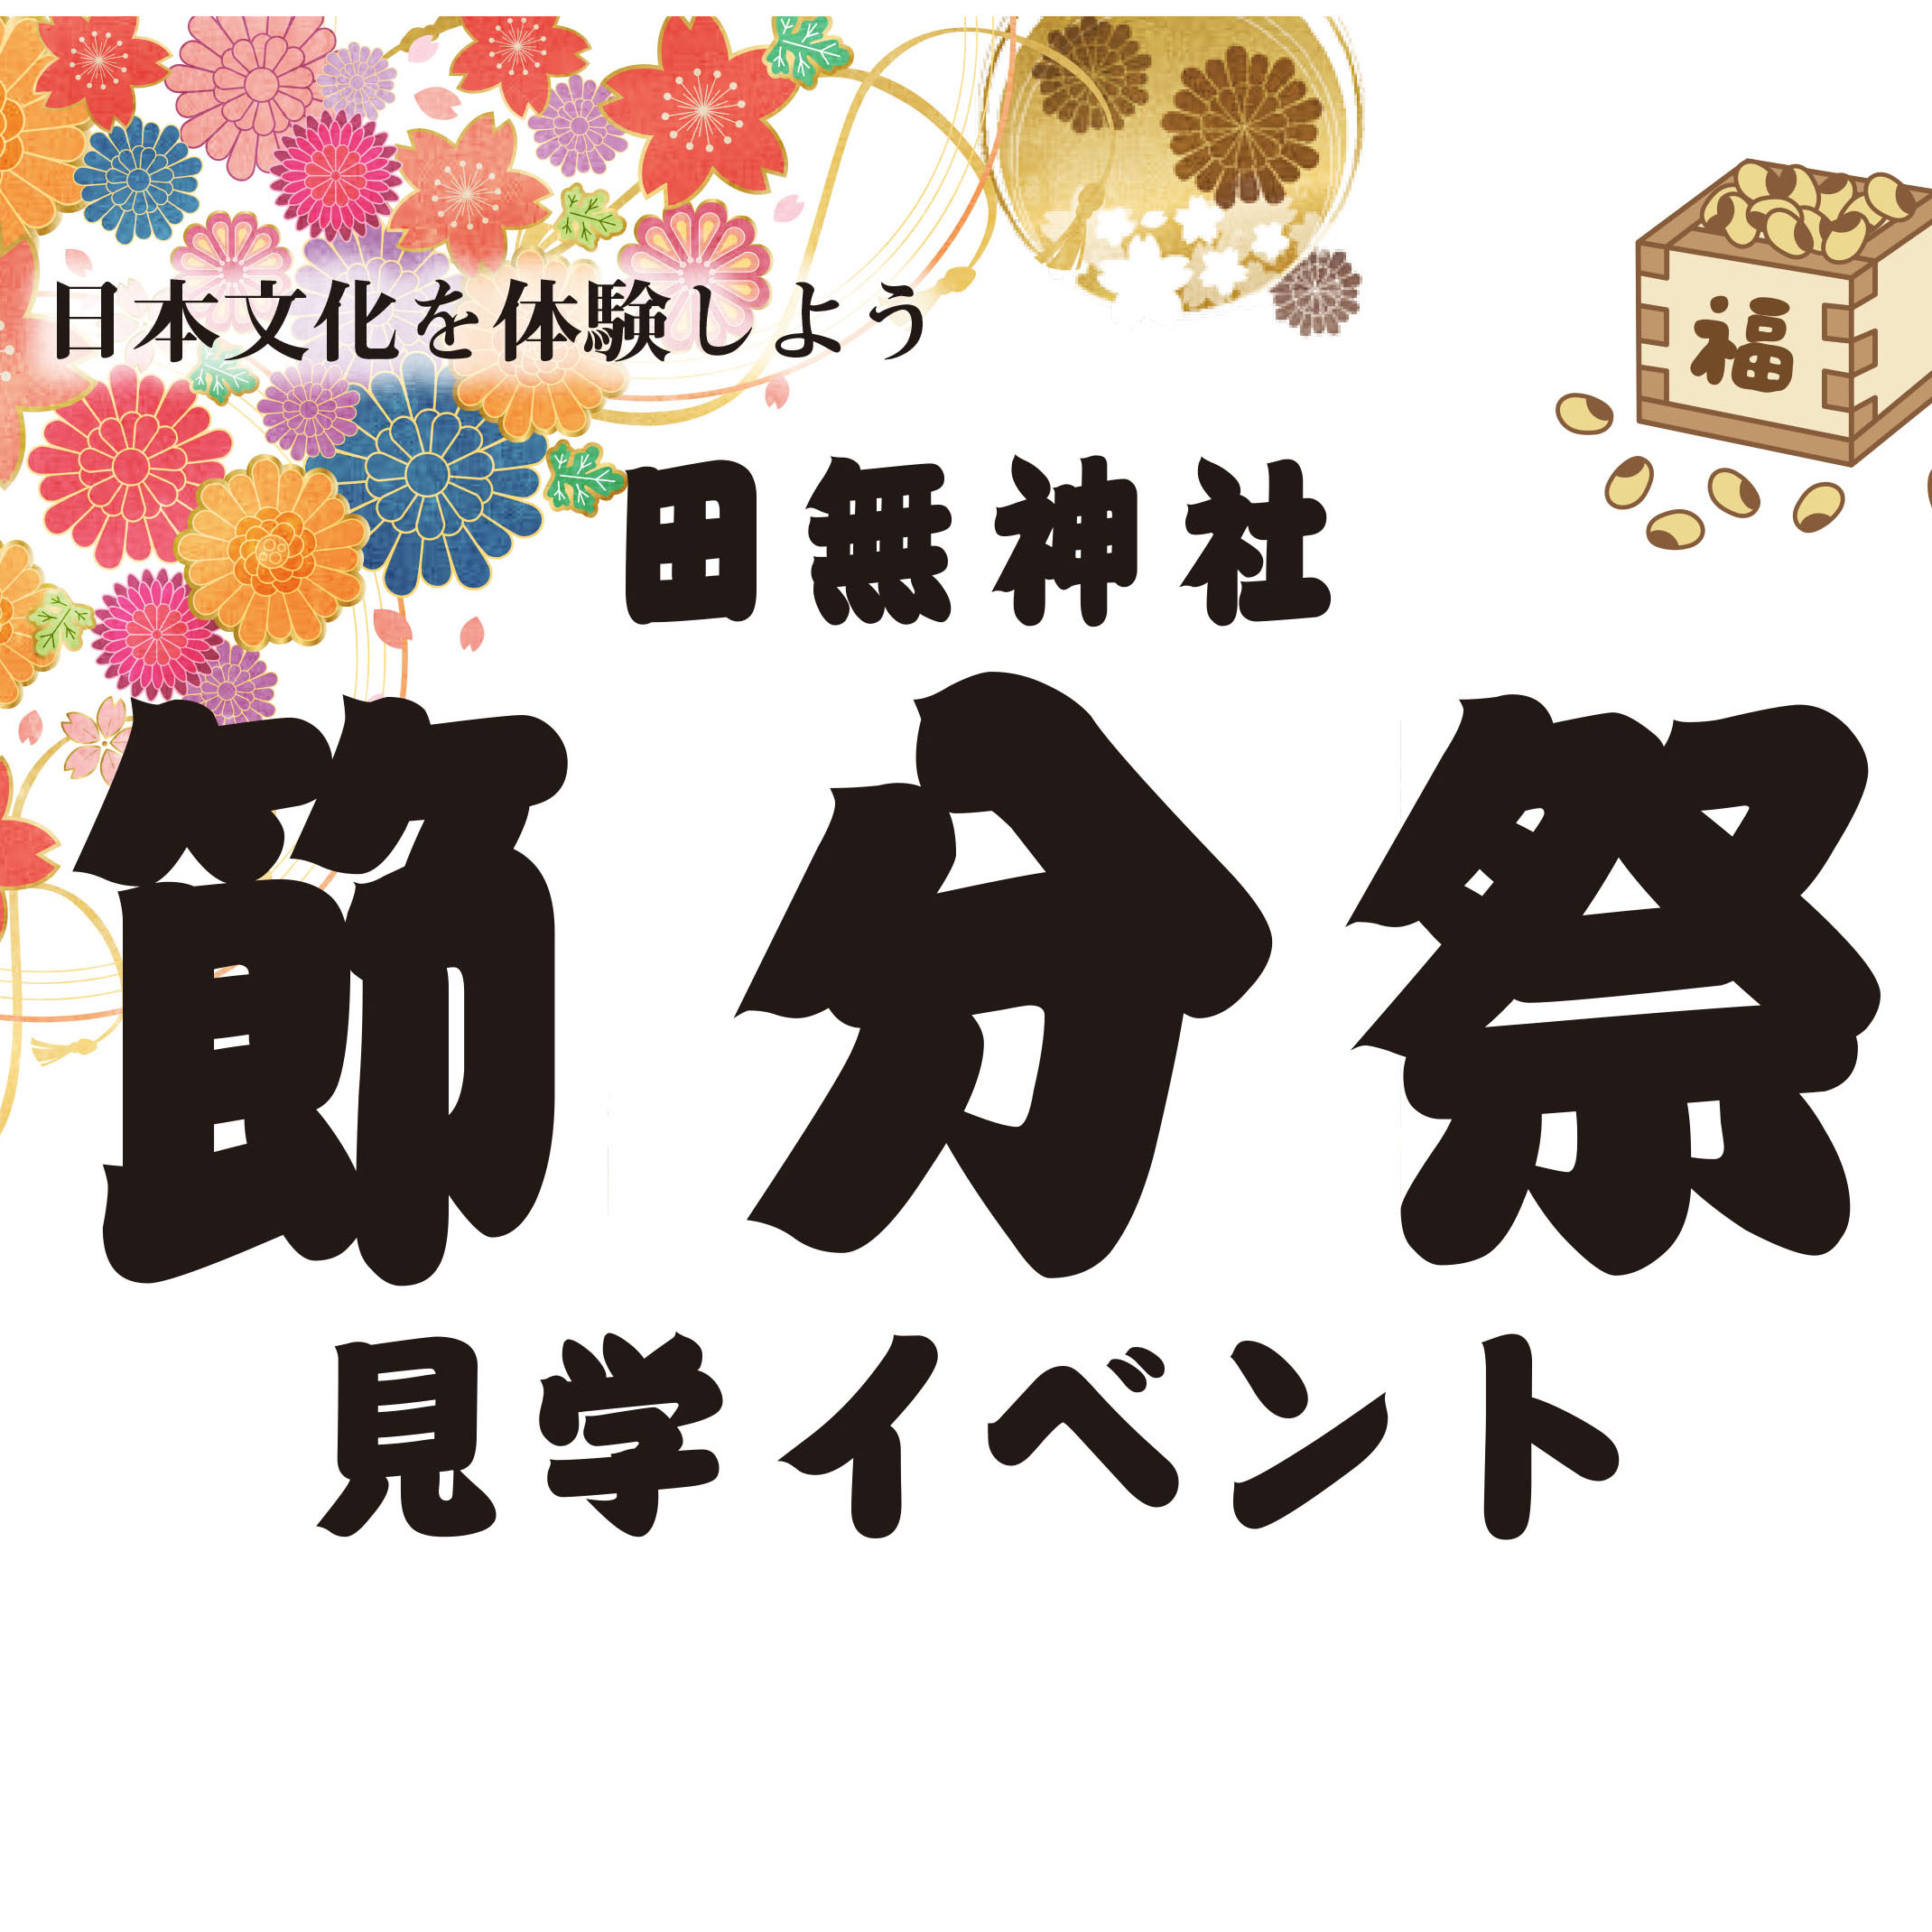 田無神社-節分祭ご招待イベントのお知らせ